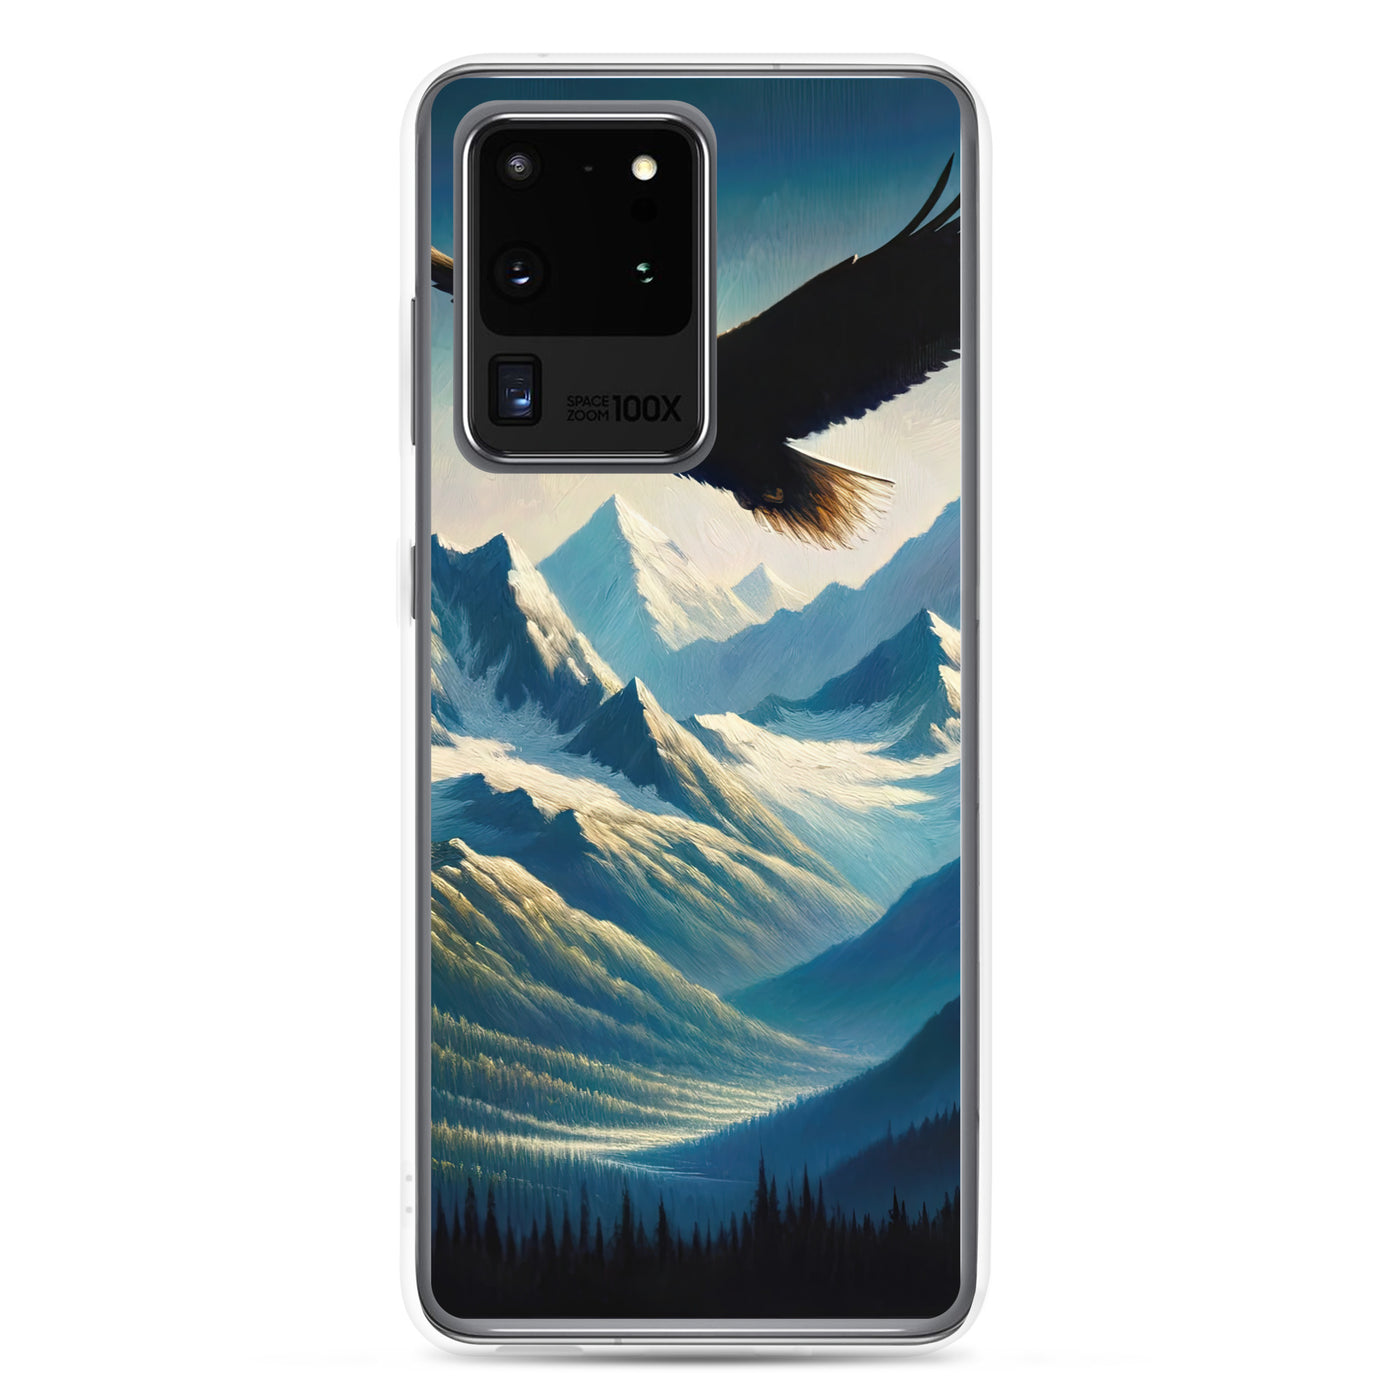 Ölgemälde eines Adlers vor schneebedeckten Bergsilhouetten - Samsung Schutzhülle (durchsichtig) berge xxx yyy zzz Samsung Galaxy S20 Ultra